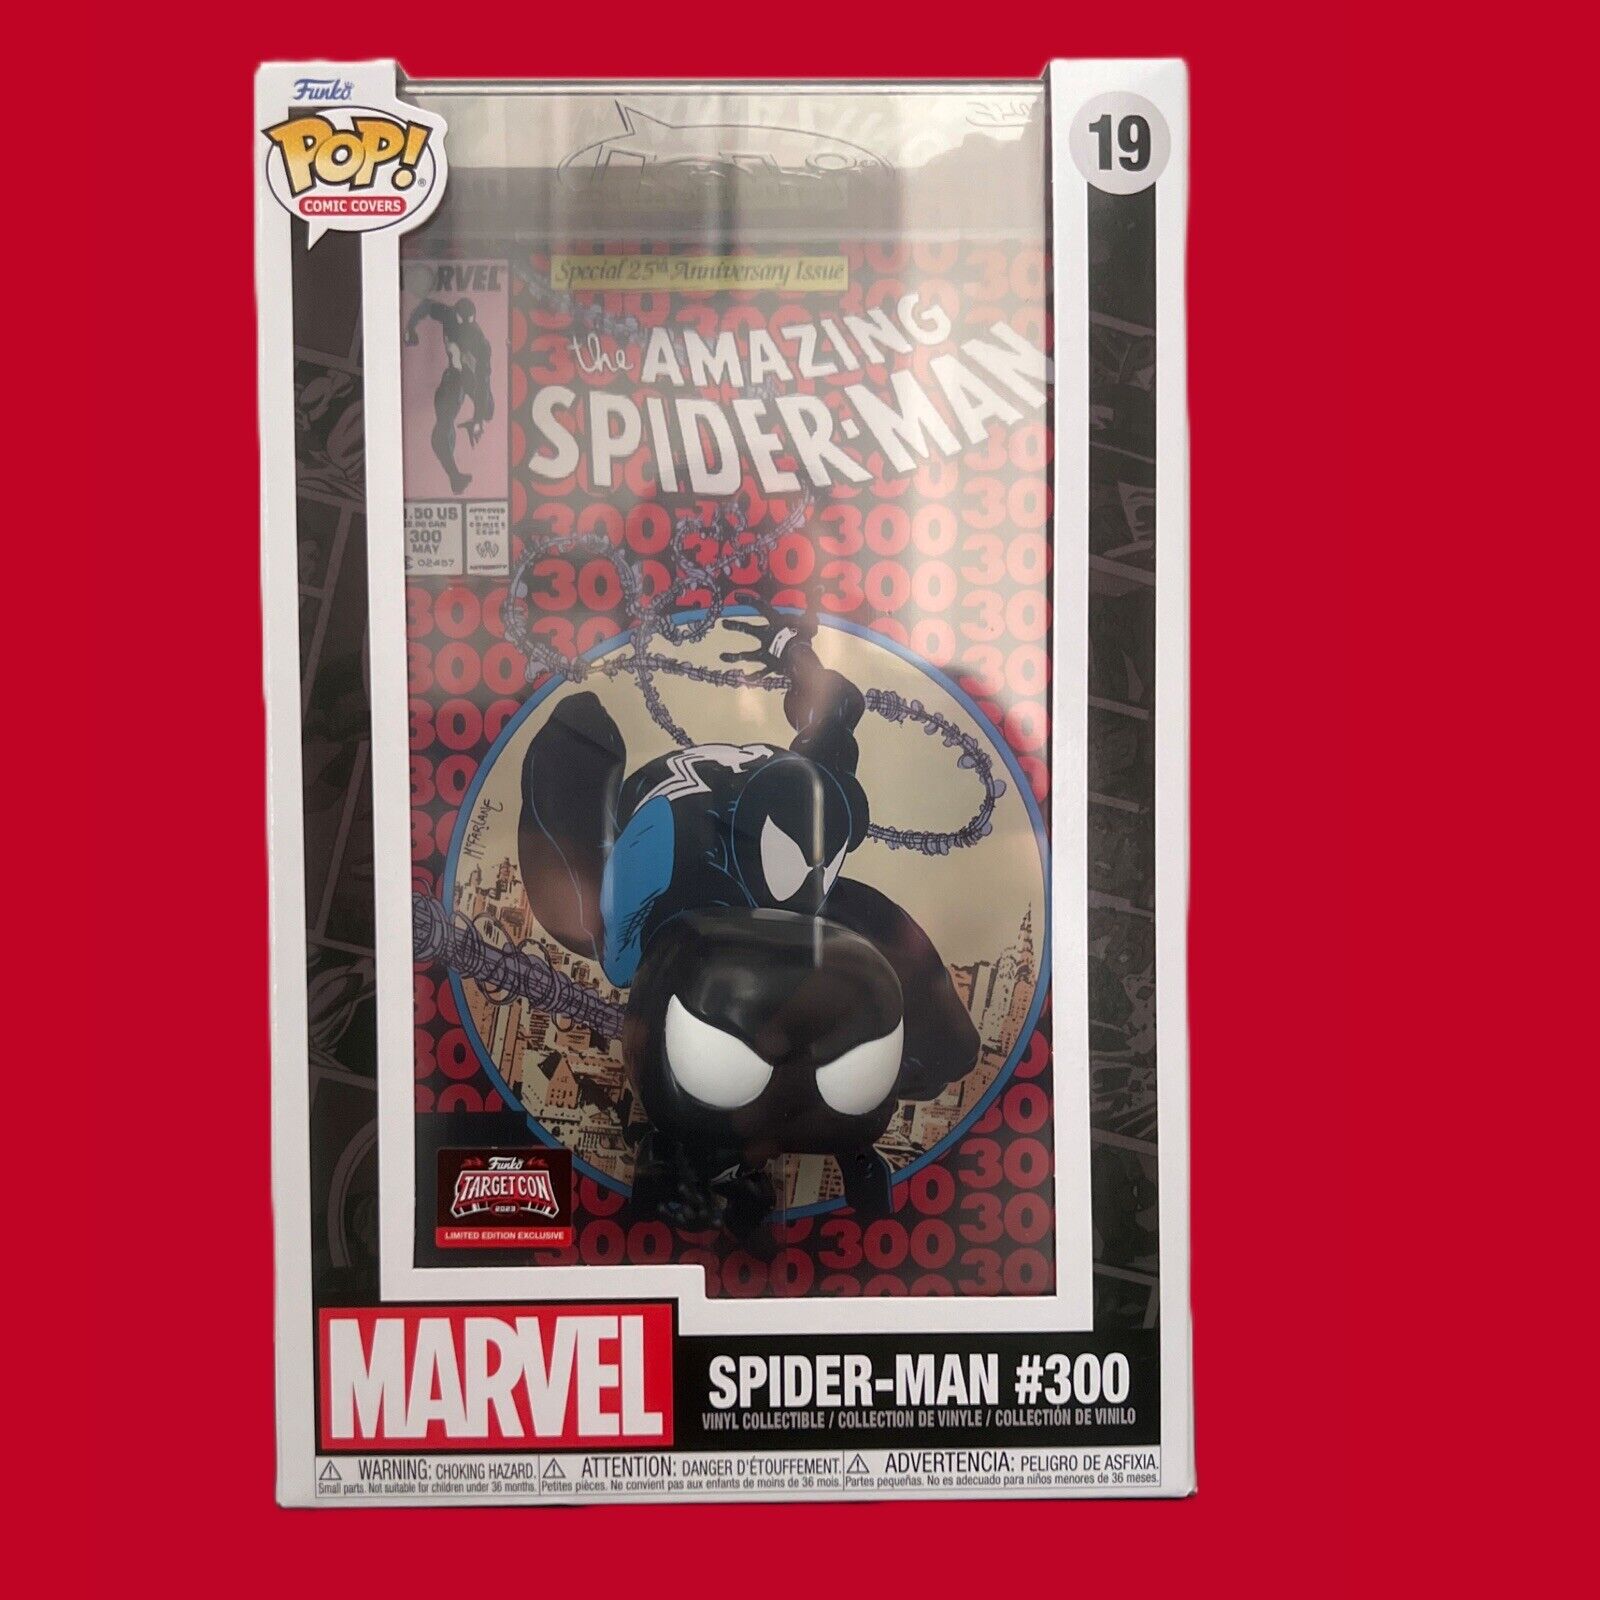 Funko Pop Comic Cover #19 - Spider-Man #300 - TargetCon Exclusive - 25th Anniv